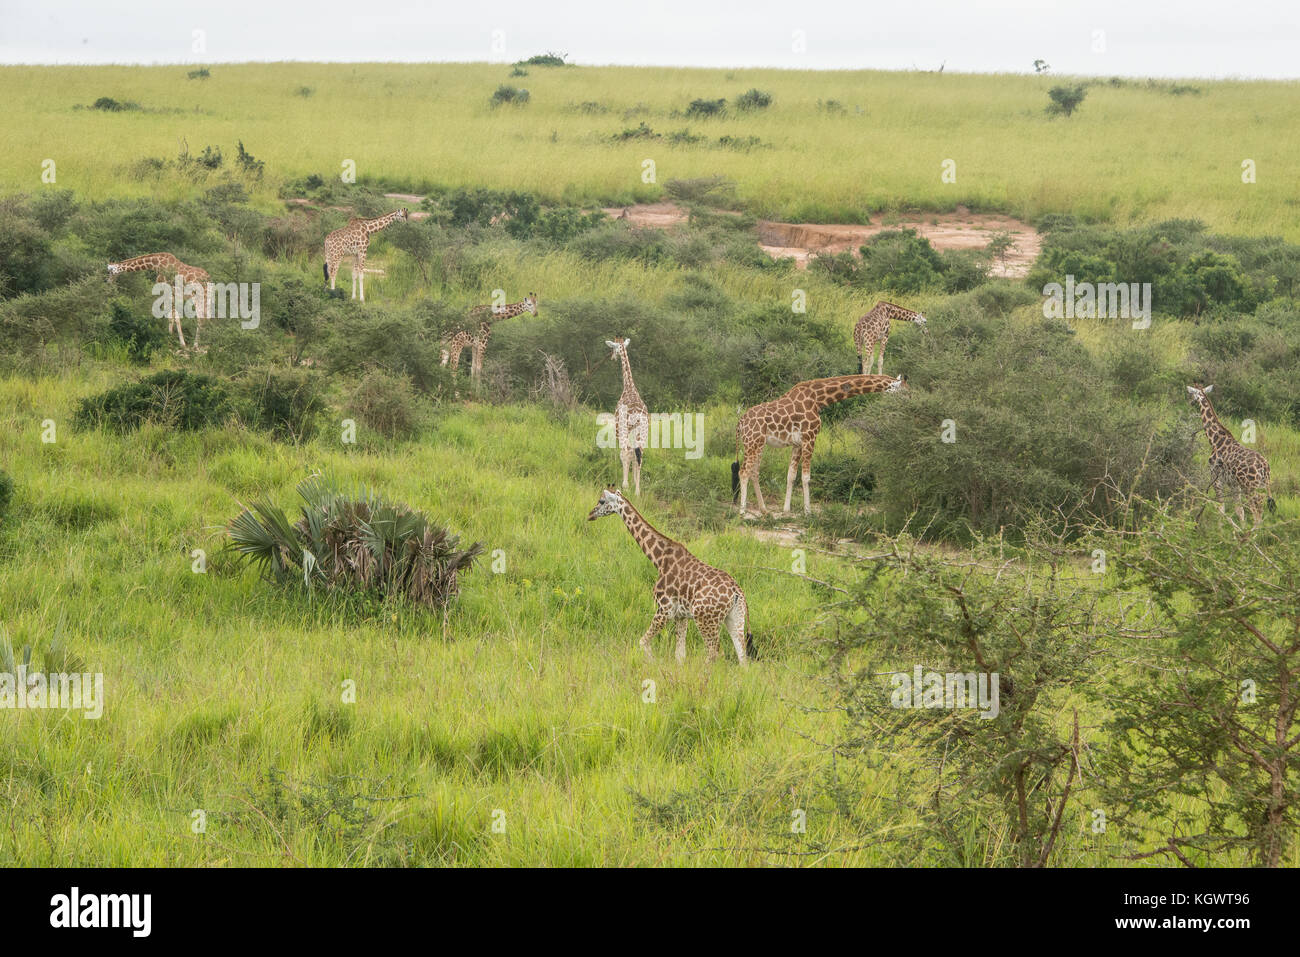 Groupe d'espèces en Rothschild les girafes se nourrissent d'arbres dans le parc national de Murchison Falls, en Ouganda. Banque D'Images